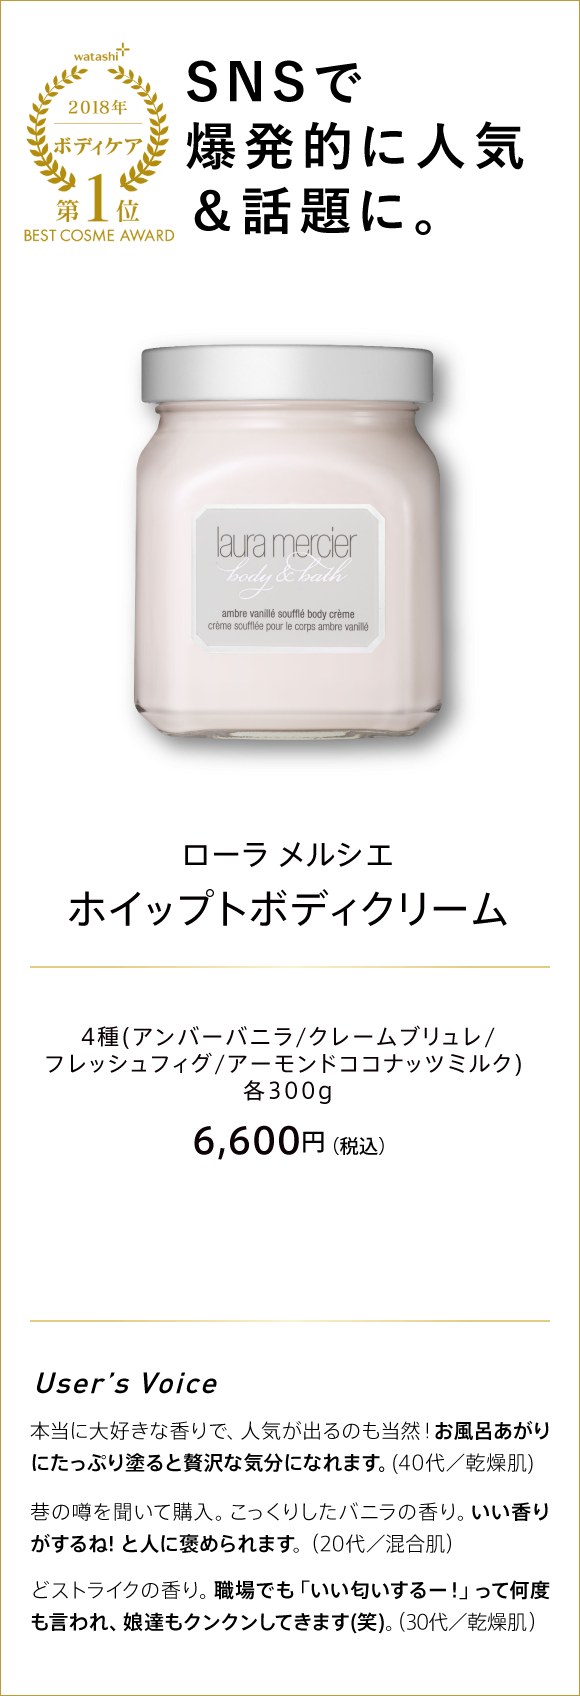 watashi+ 2018 ボディケア 第1位 BEST COSME AWARD 人類モテの香り!と人気＆話題に。 ローラ メルシエ ホイップトボディクリーム 4種(アンバーバニラ/クレームブリュレ/フレッシュフィグ/アーモンドココナッツミルク) 各300g 6,600円(税込)